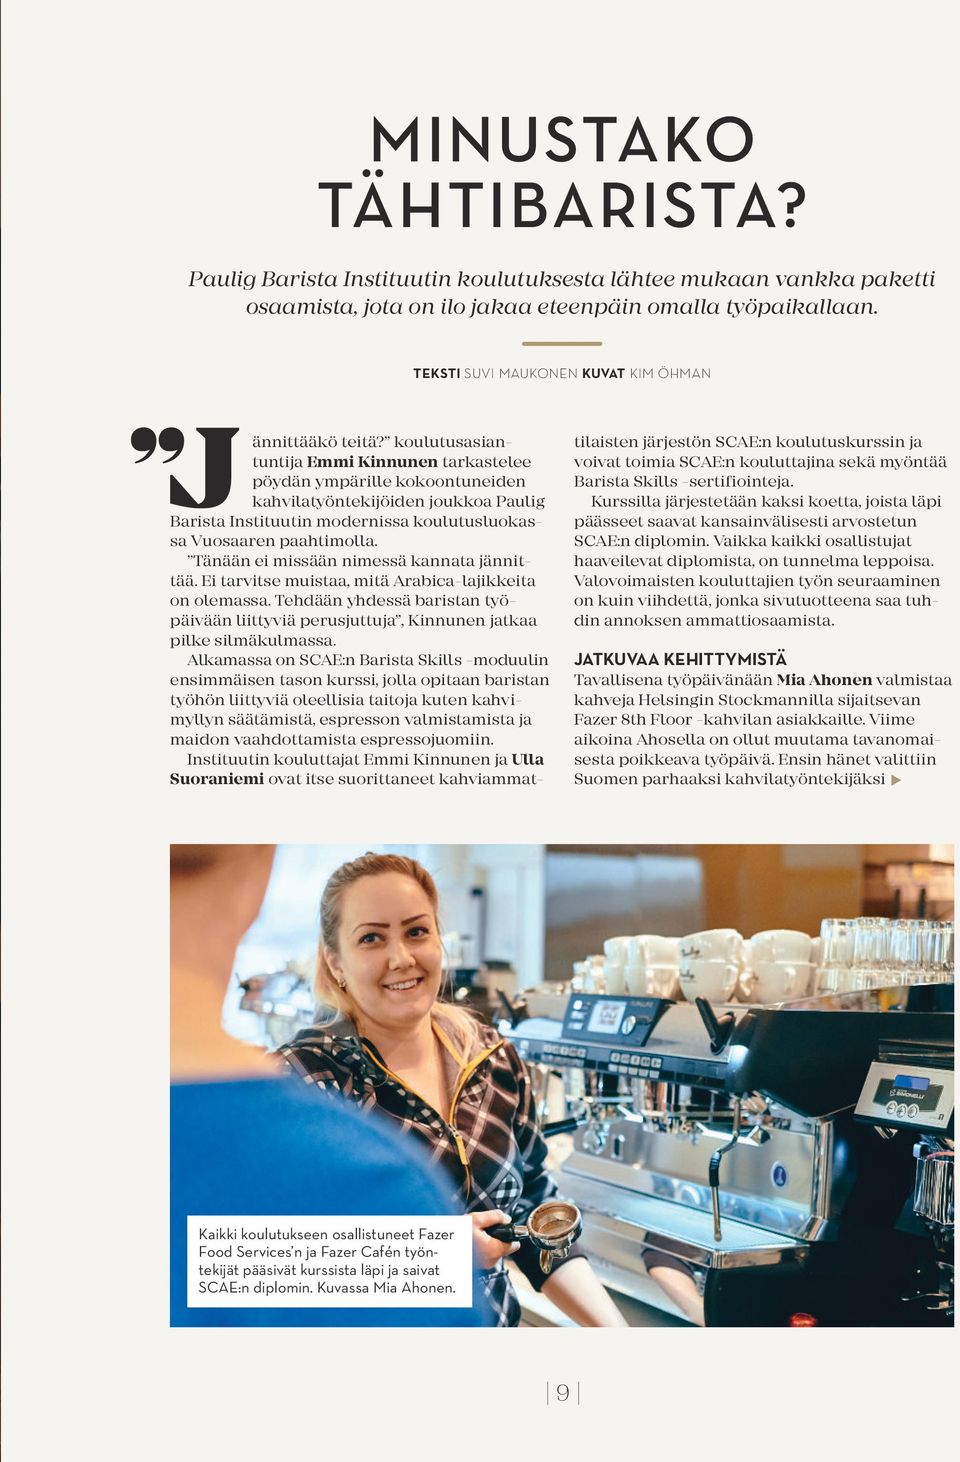 koulutusasiantuntija Emmi Kinnunen tarkastelee pöydän ympärille kokoontuneiden kahvilatyöntekijöiden joukkoa Paulig Barista Instituutin modernissa koulutusluokassa Vuosaaren paahtimolla.